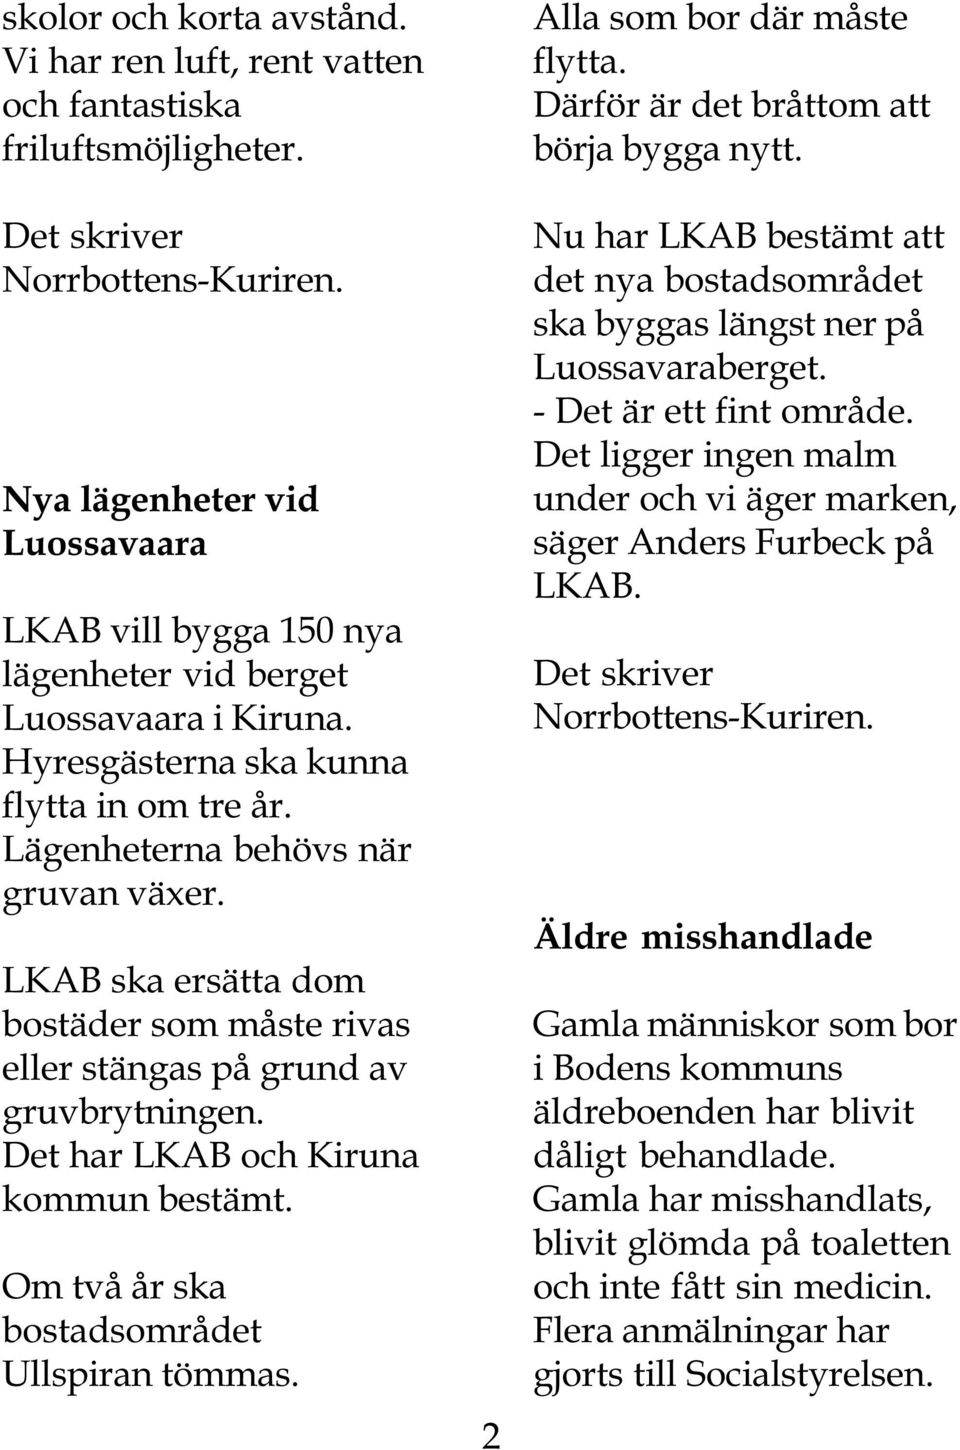 Det har LKAB och Kiruna kommun bestämt. Om två år ska bostadsområdet Ullspiran tömmas. 2 Alla som bor där måste flytta. Därför är det bråttom att börja bygga nytt.